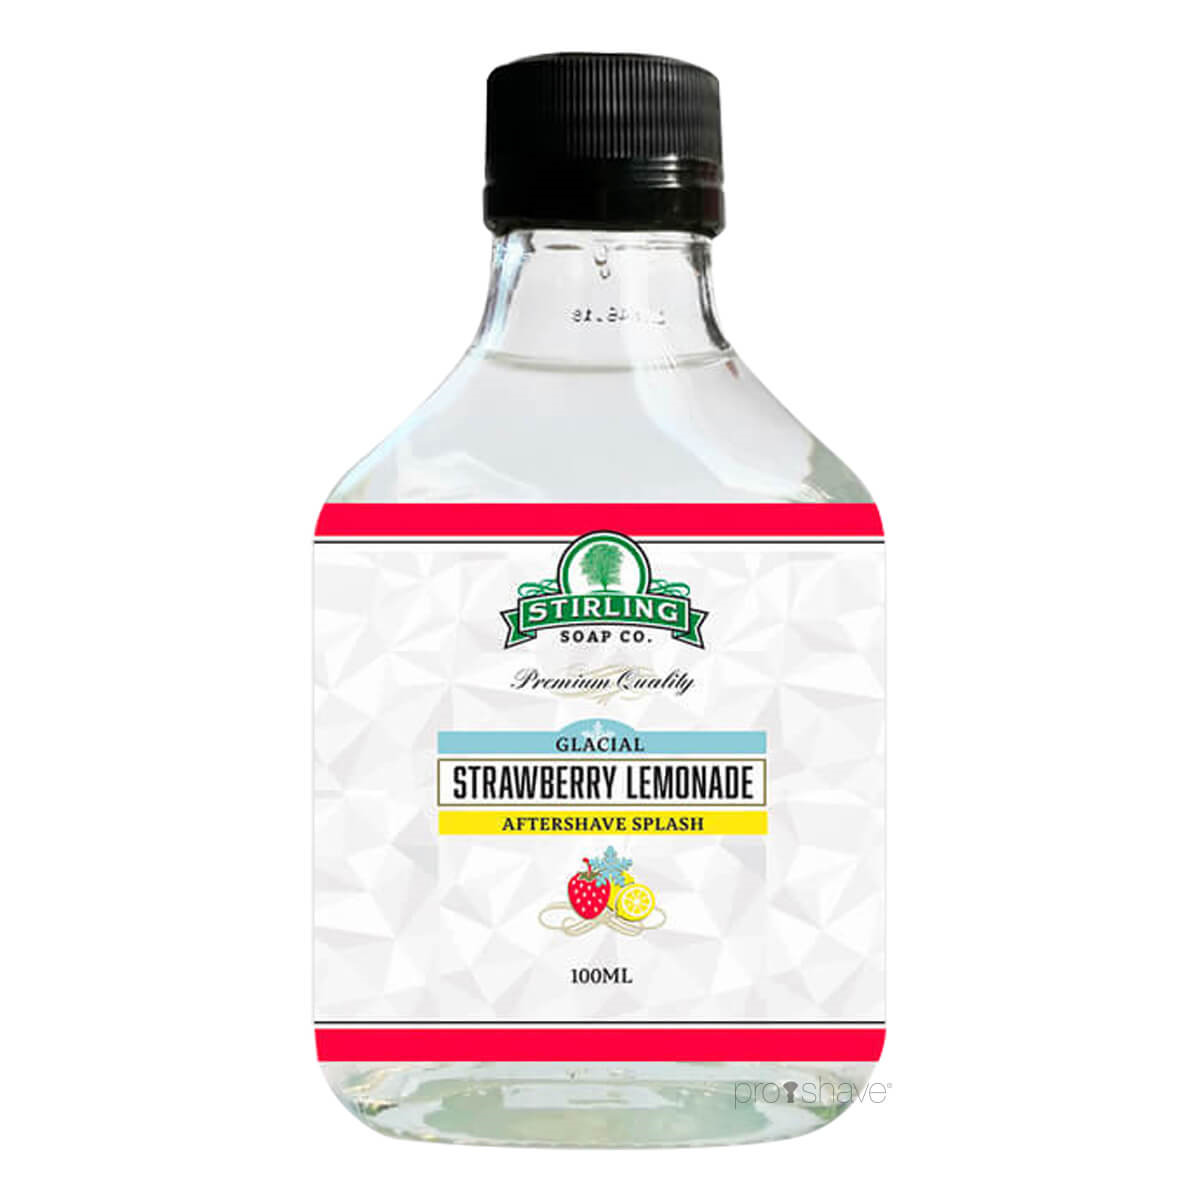 Stirling Soap Co. Aftershave Splash, Glacial - Strawberry Lemonade, 100 ml.